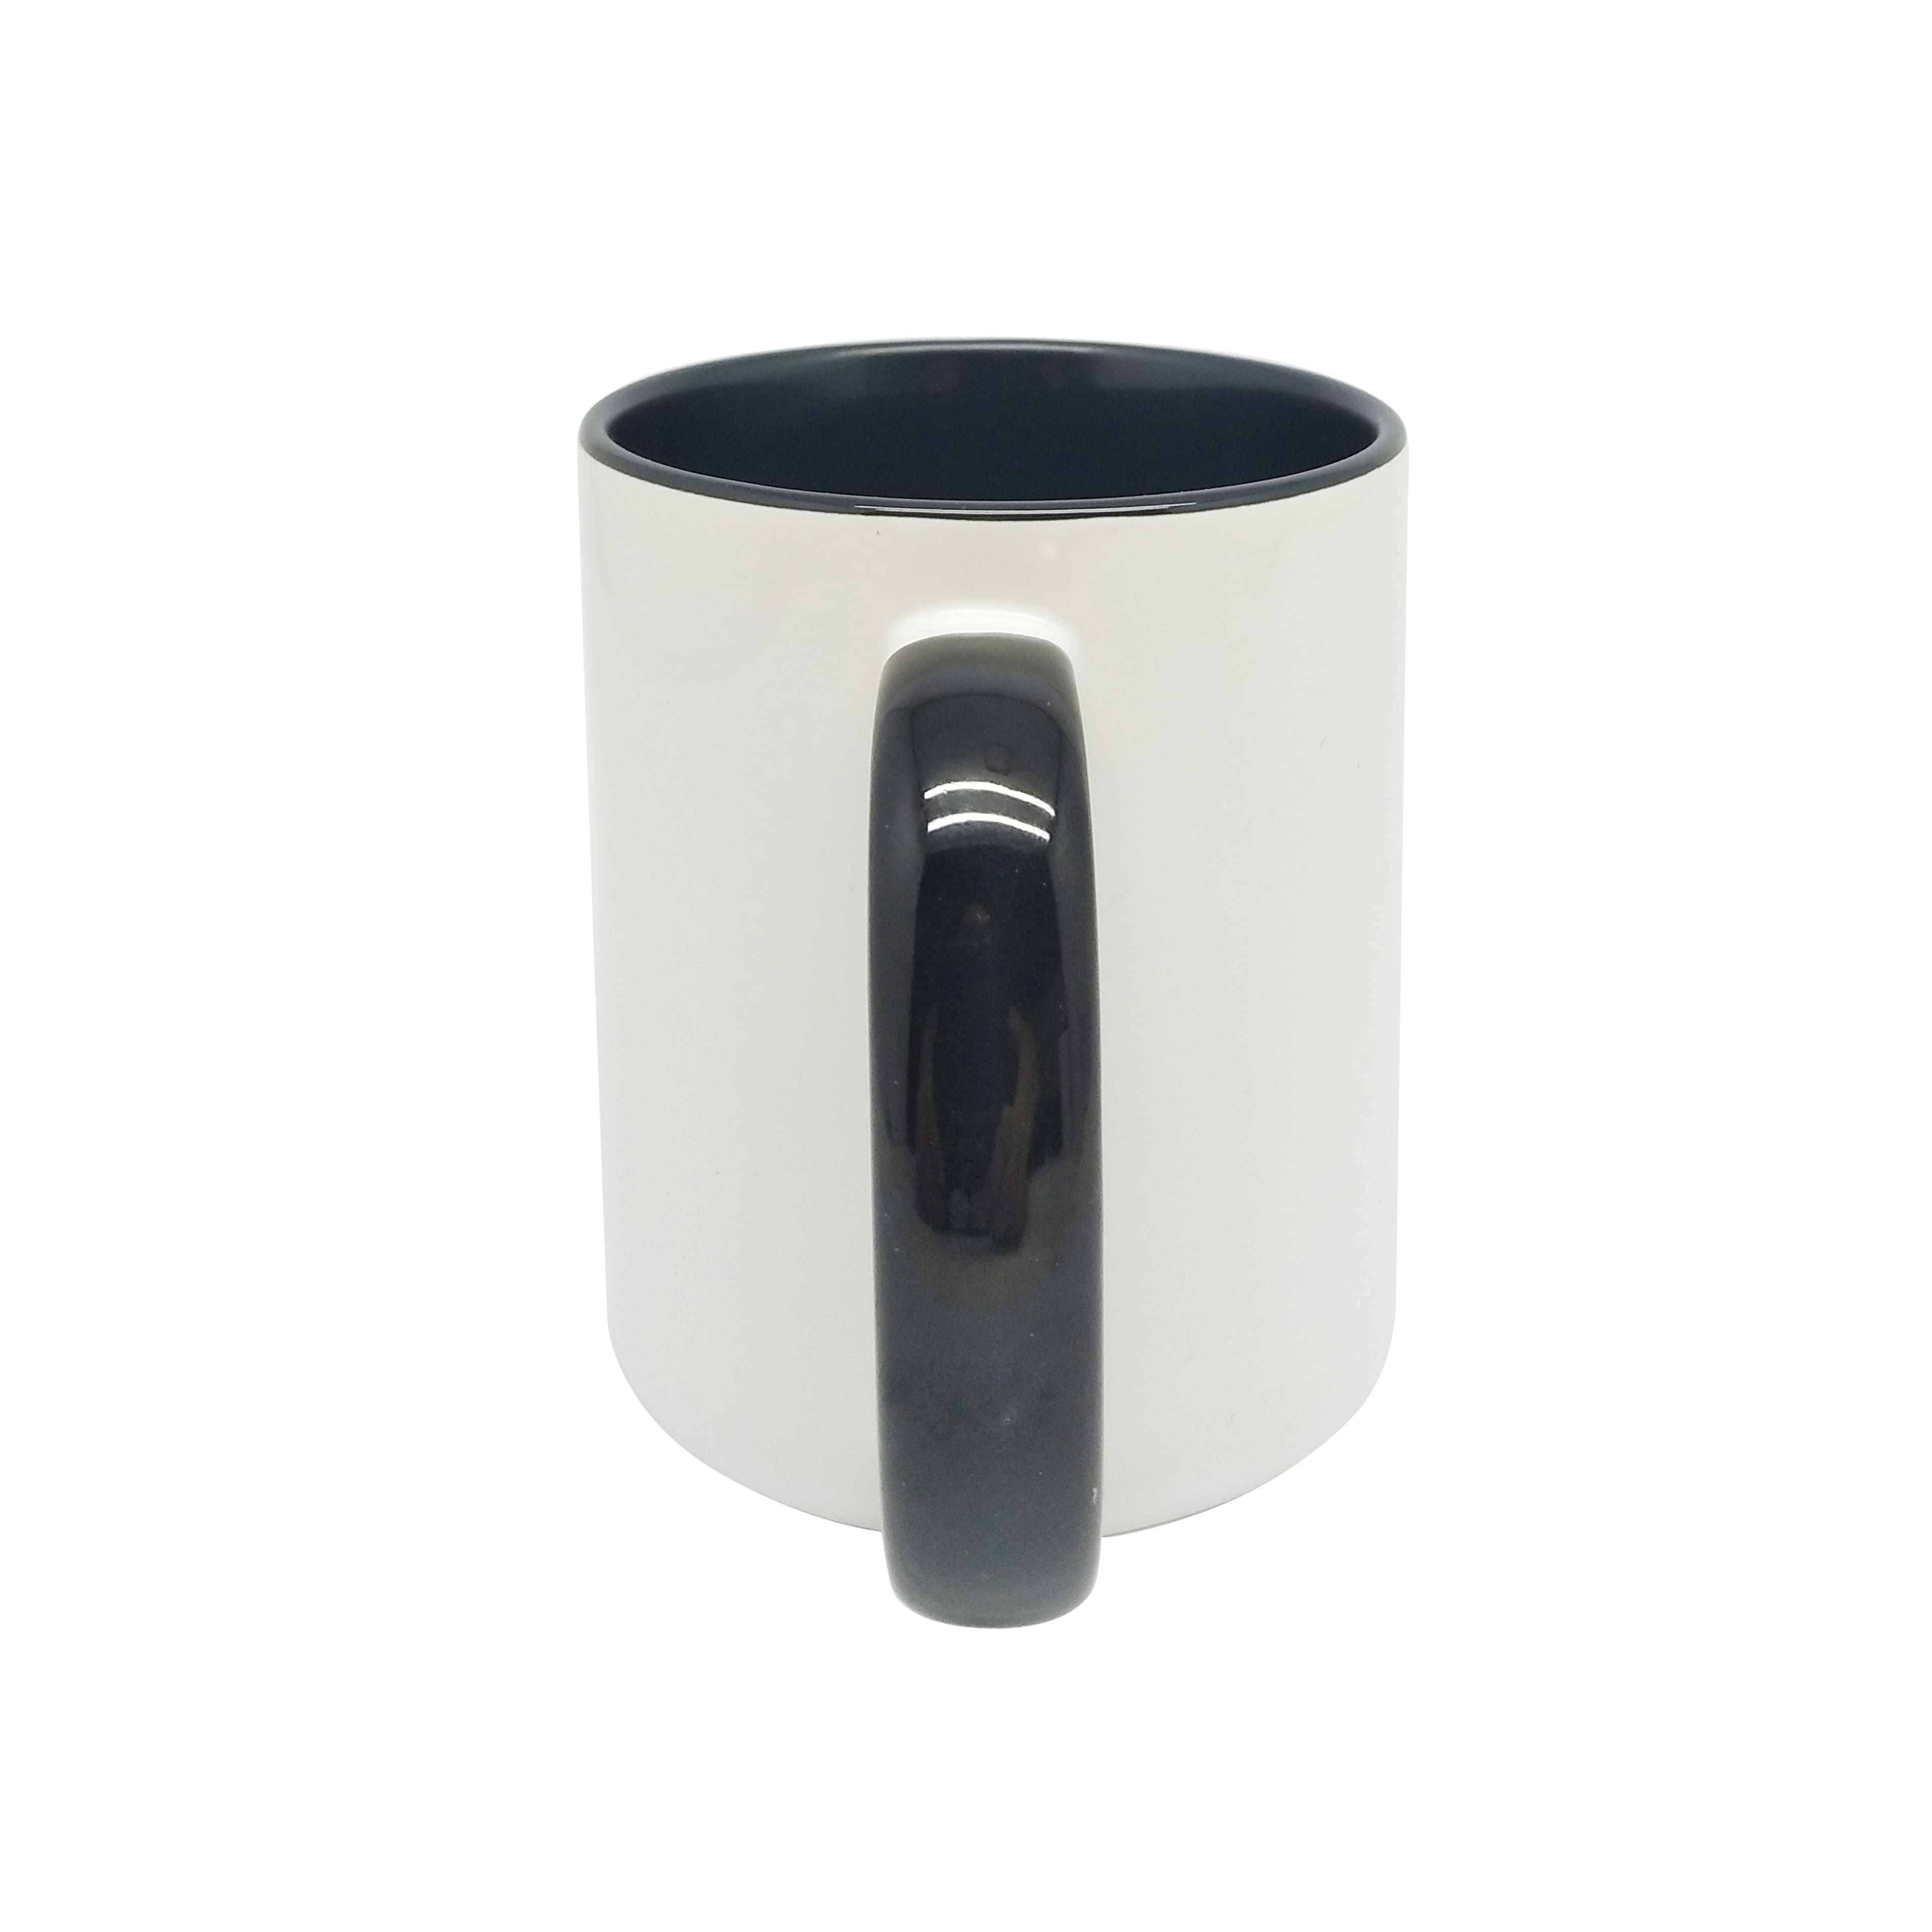 11.8oz. Two-Tone Sublimation Mug Pack by Make Market&#xAE; 